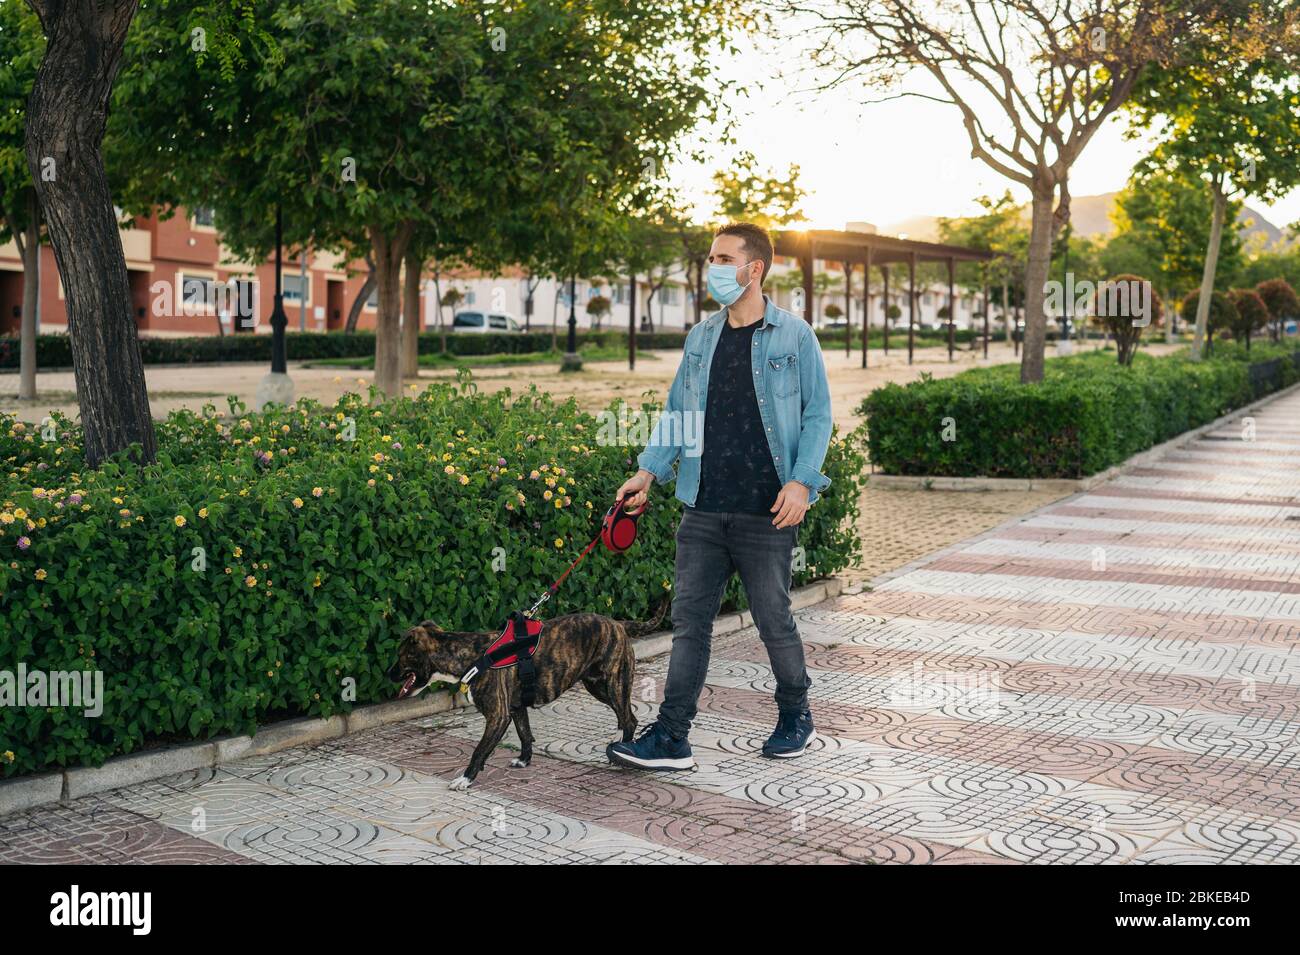 Giovane uomo in maschera medica che cammina nel parco con il suo cane. Covid-19 coronavirus pandemico. Vita attiva in quarantena nell'epidemia di Corona. Foto Stock